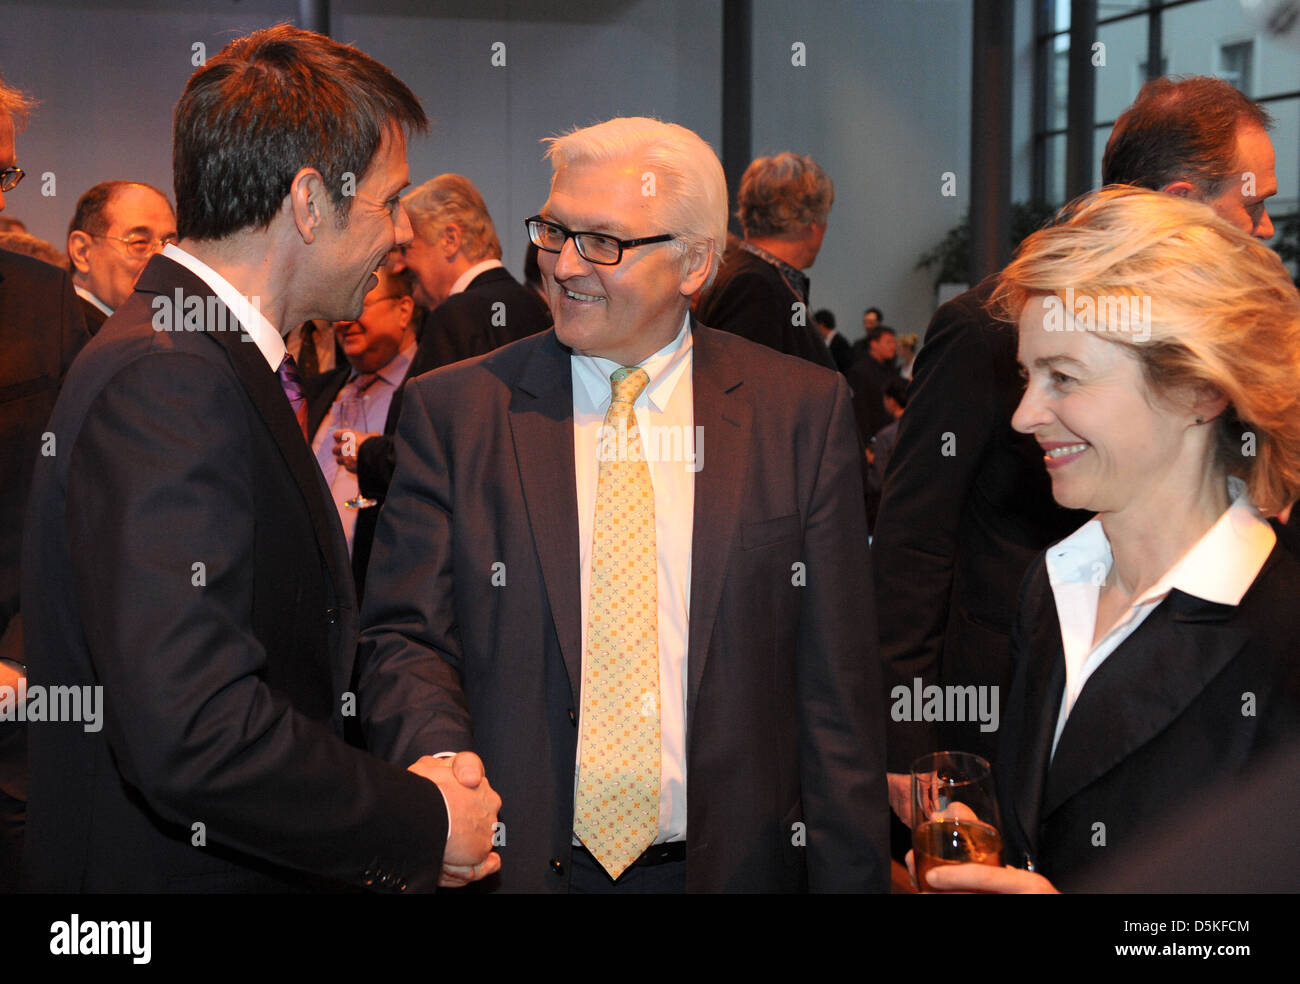 RenŽ Obermann and Frank-Walter Steinmeier and Ursula von der Leyen at manager meeting ofgerman telekom at Atrium Berlin, Stock Photo